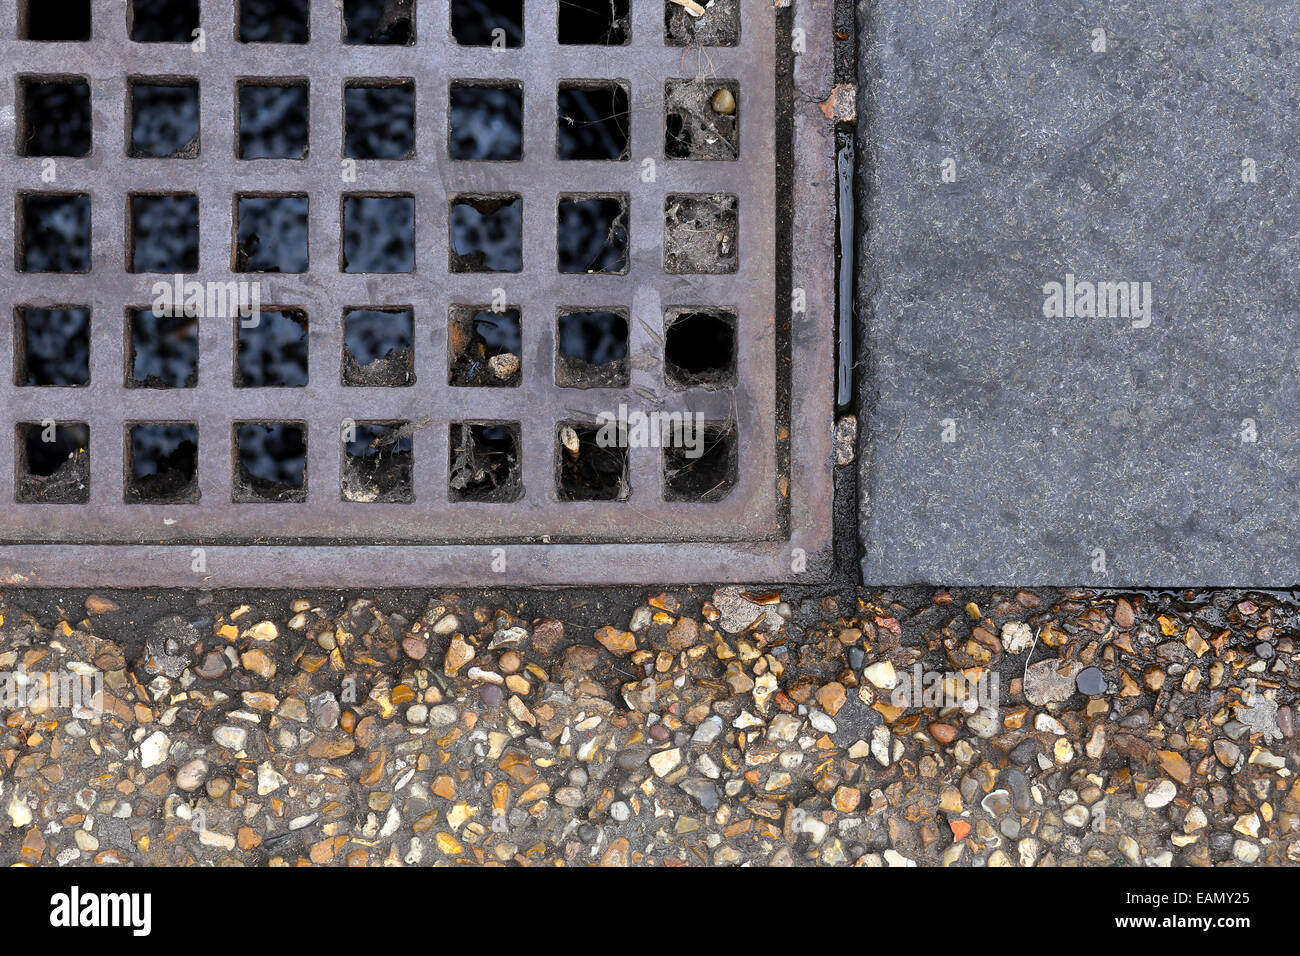 Metallgitter Abfluss Abdeckung in einen Weg von Asphalt und Pflaster graue  Steinfliesen, Grunge-Straße-Hintergrund Stockfotografie - Alamy